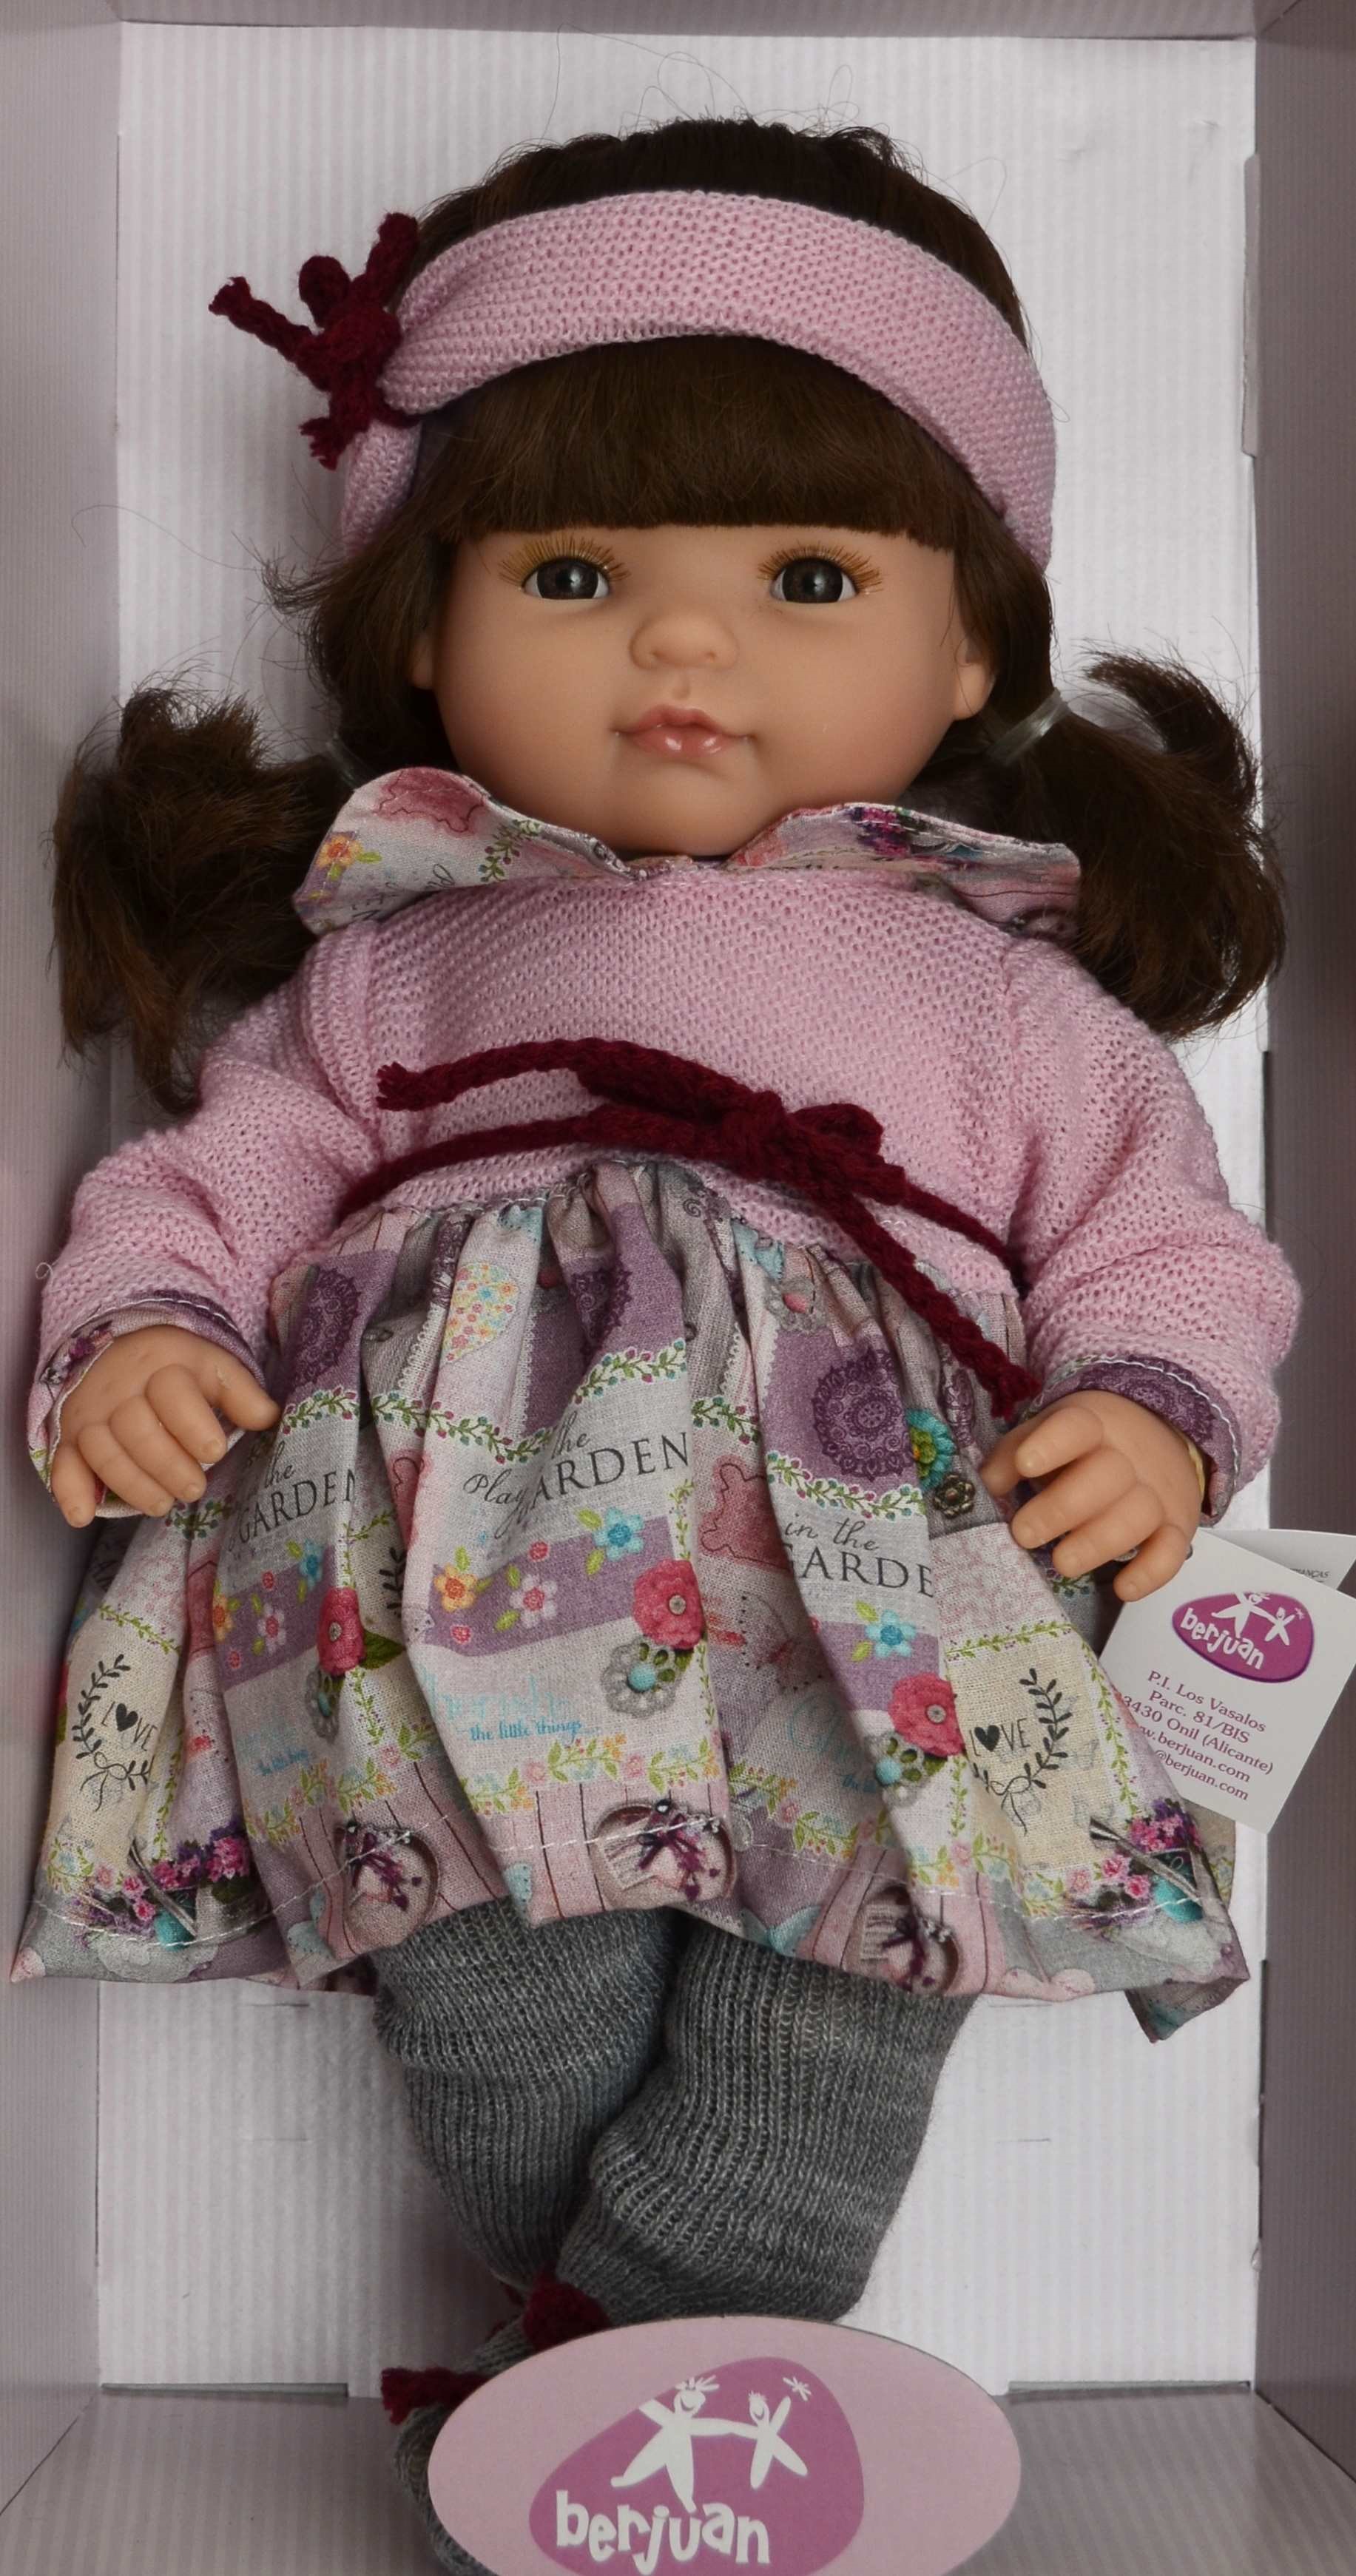 Realistická panenka holčička Claudia s čelenkou od firmy Berjuan